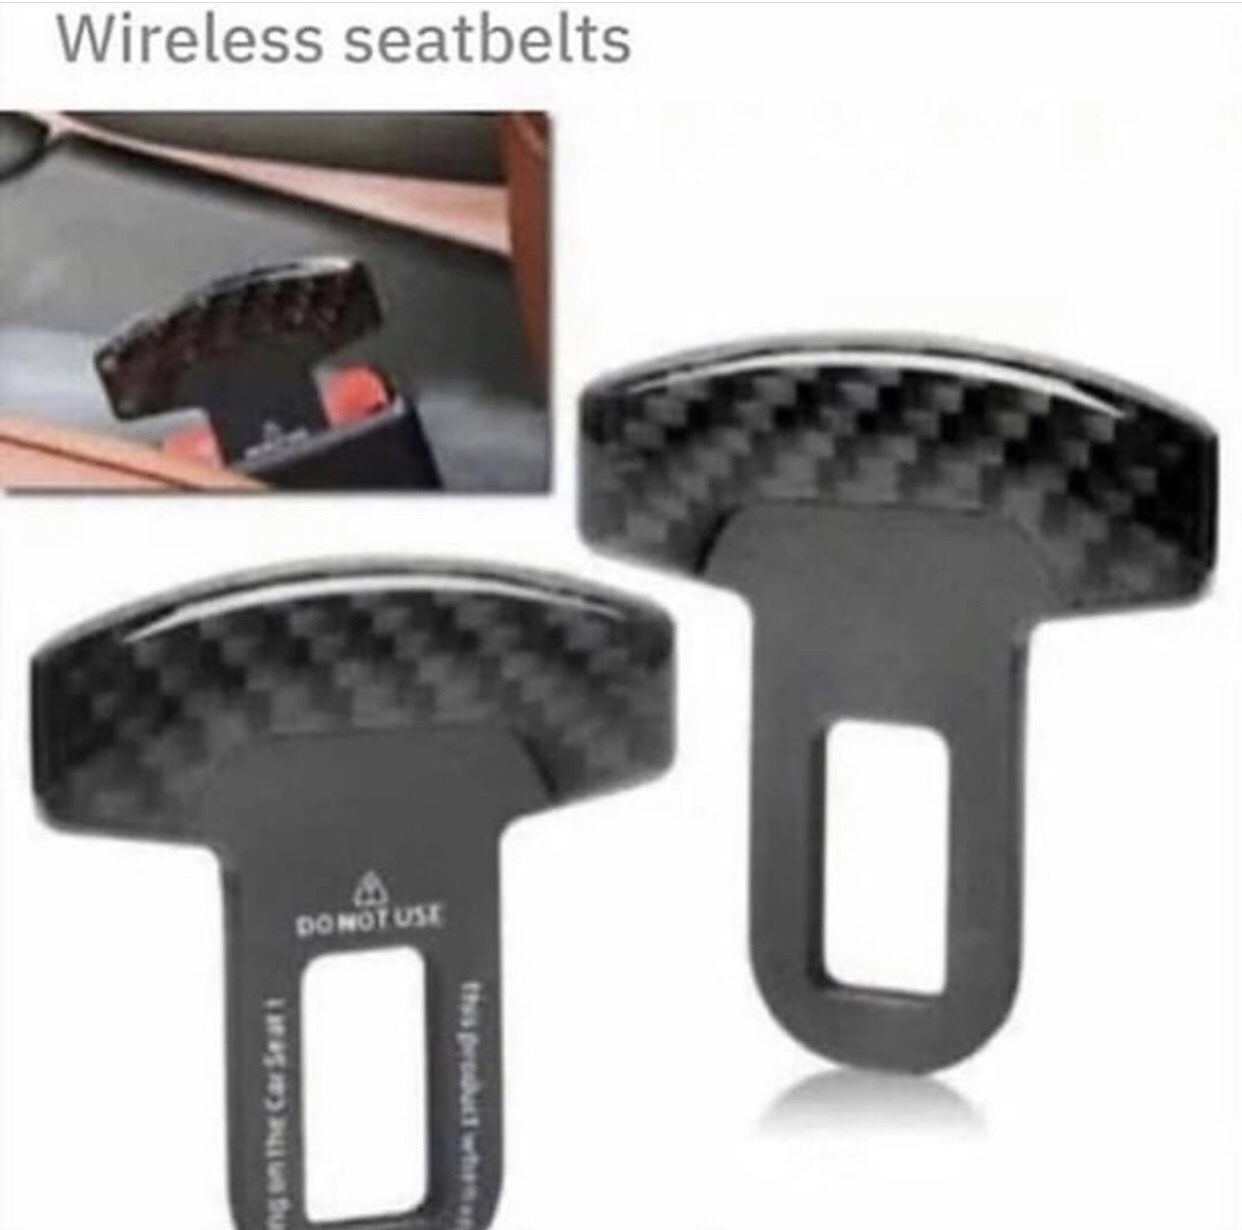 Wireless seatbelts - meme